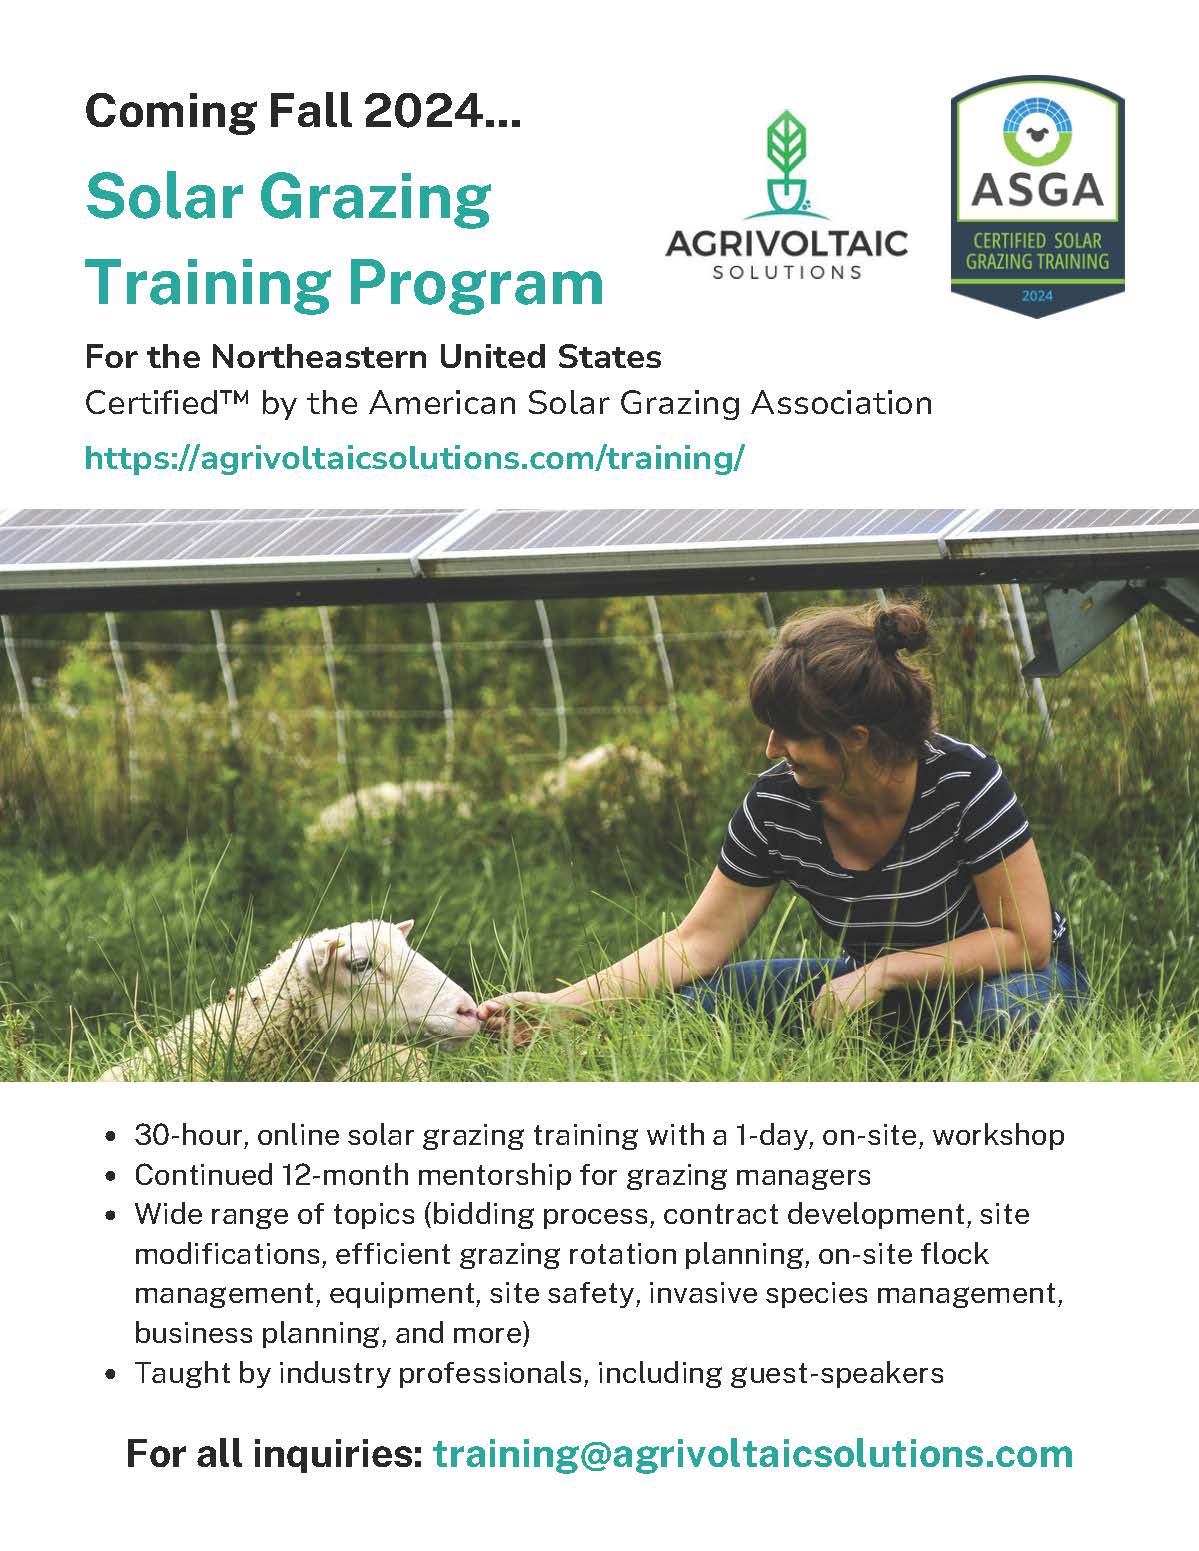 Agrivoltaic Solutions Solar Grazing Training Program - Fall 2024 -1